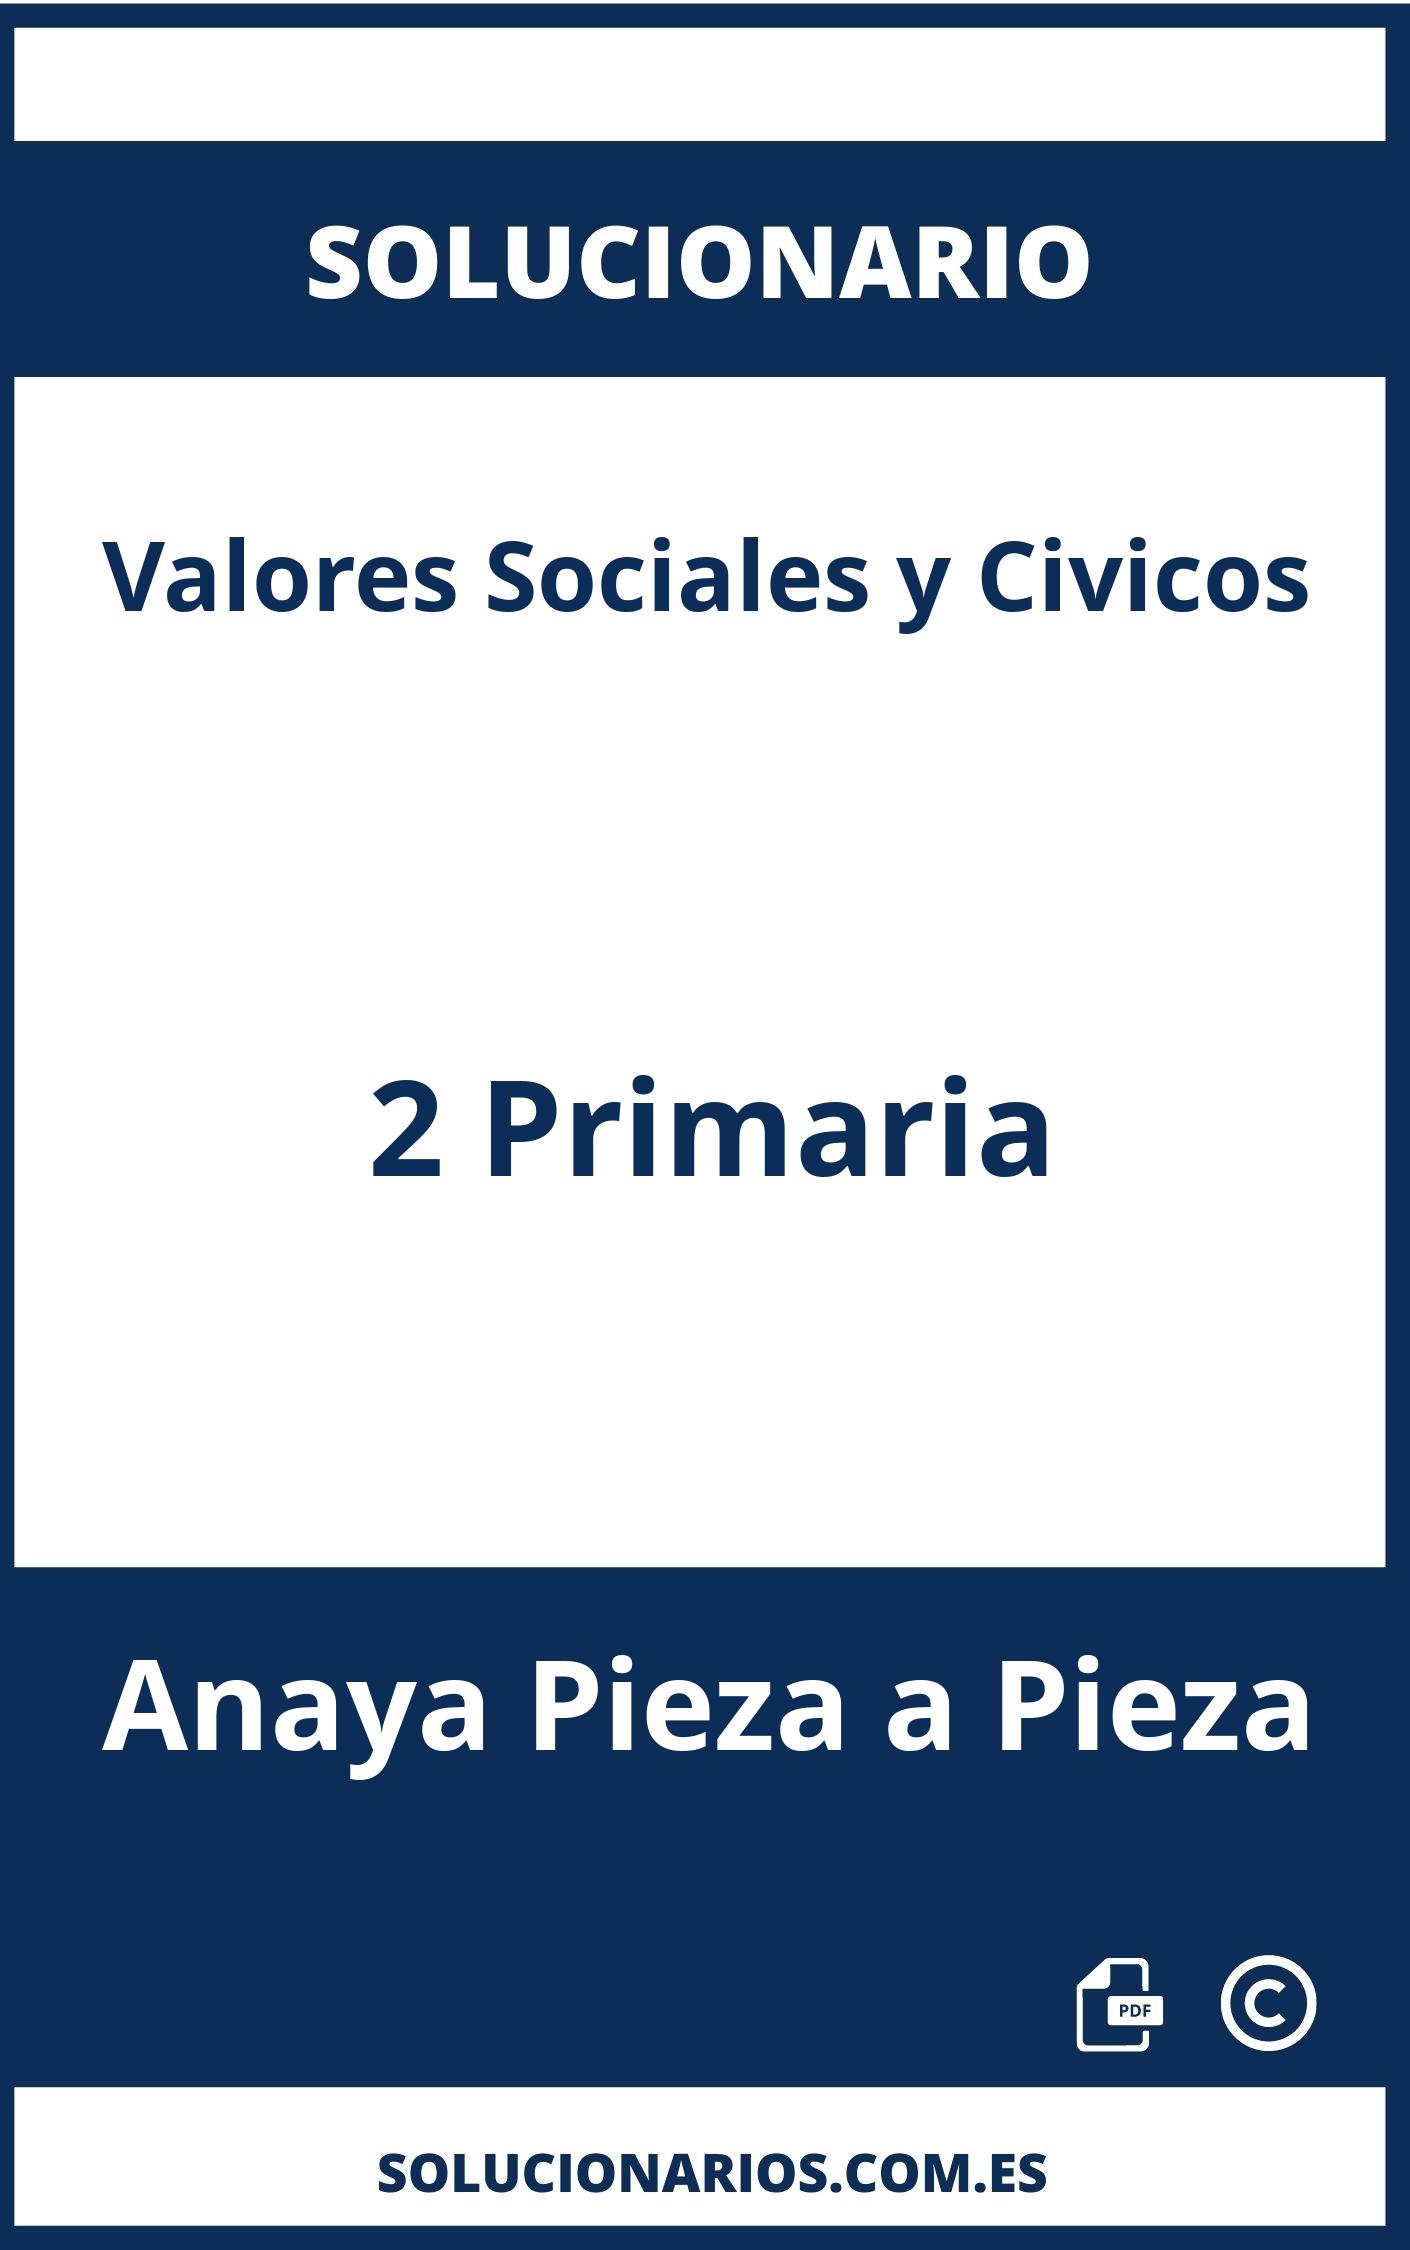 Solucionario Valores Sociales y Civicos 2 Primaria Anaya Pieza a Pieza